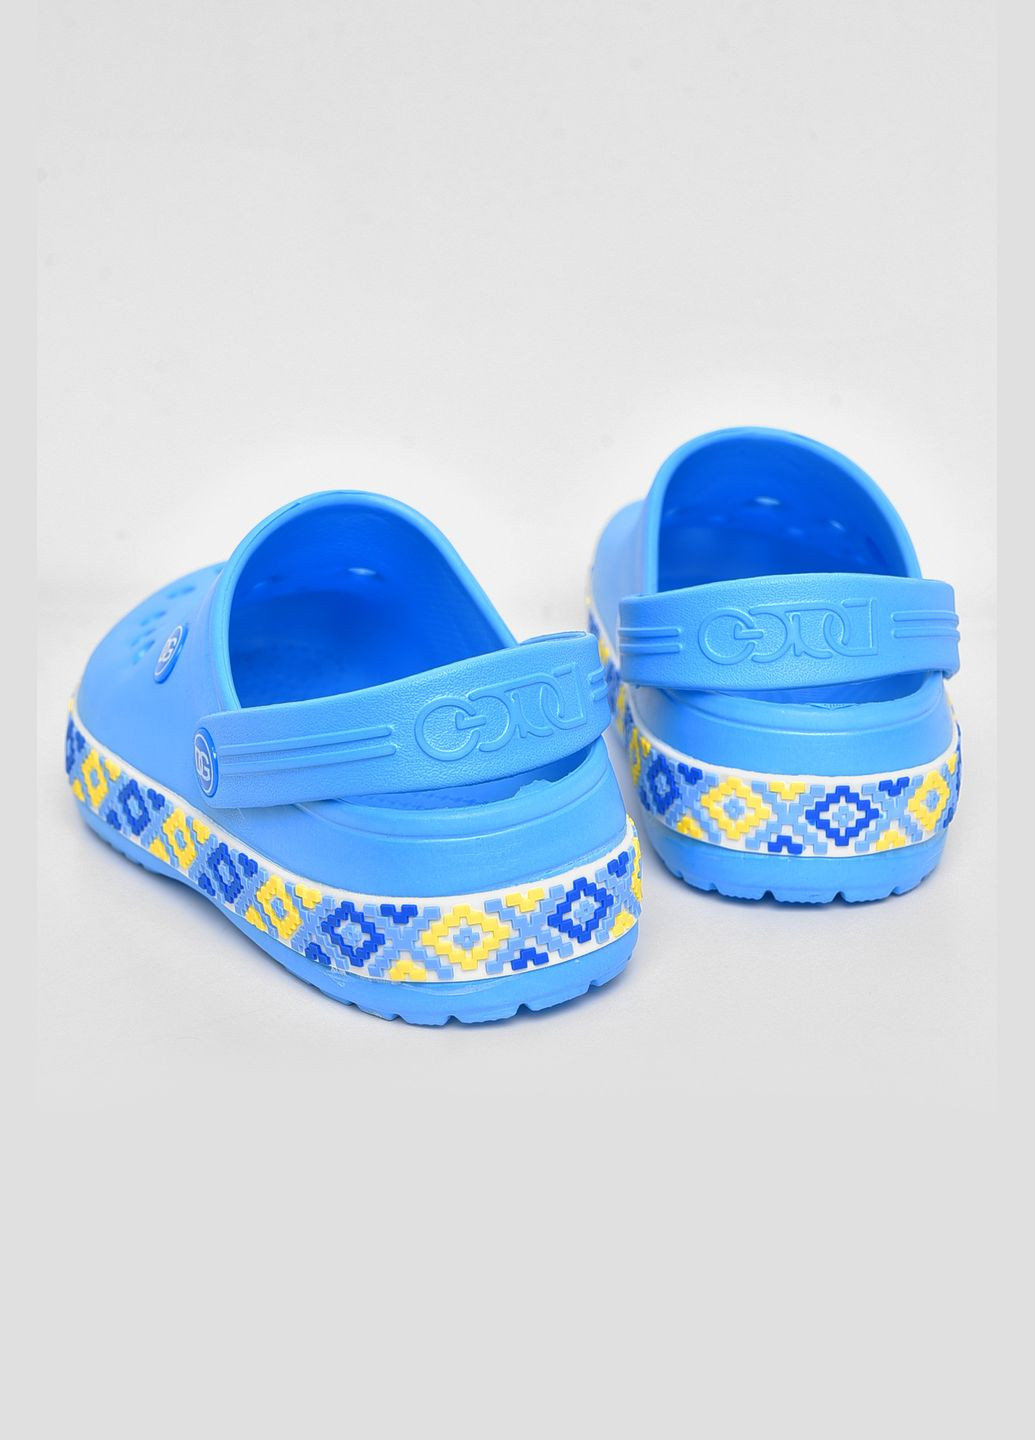 Синие кроксы женские синего цвета Let's Shop